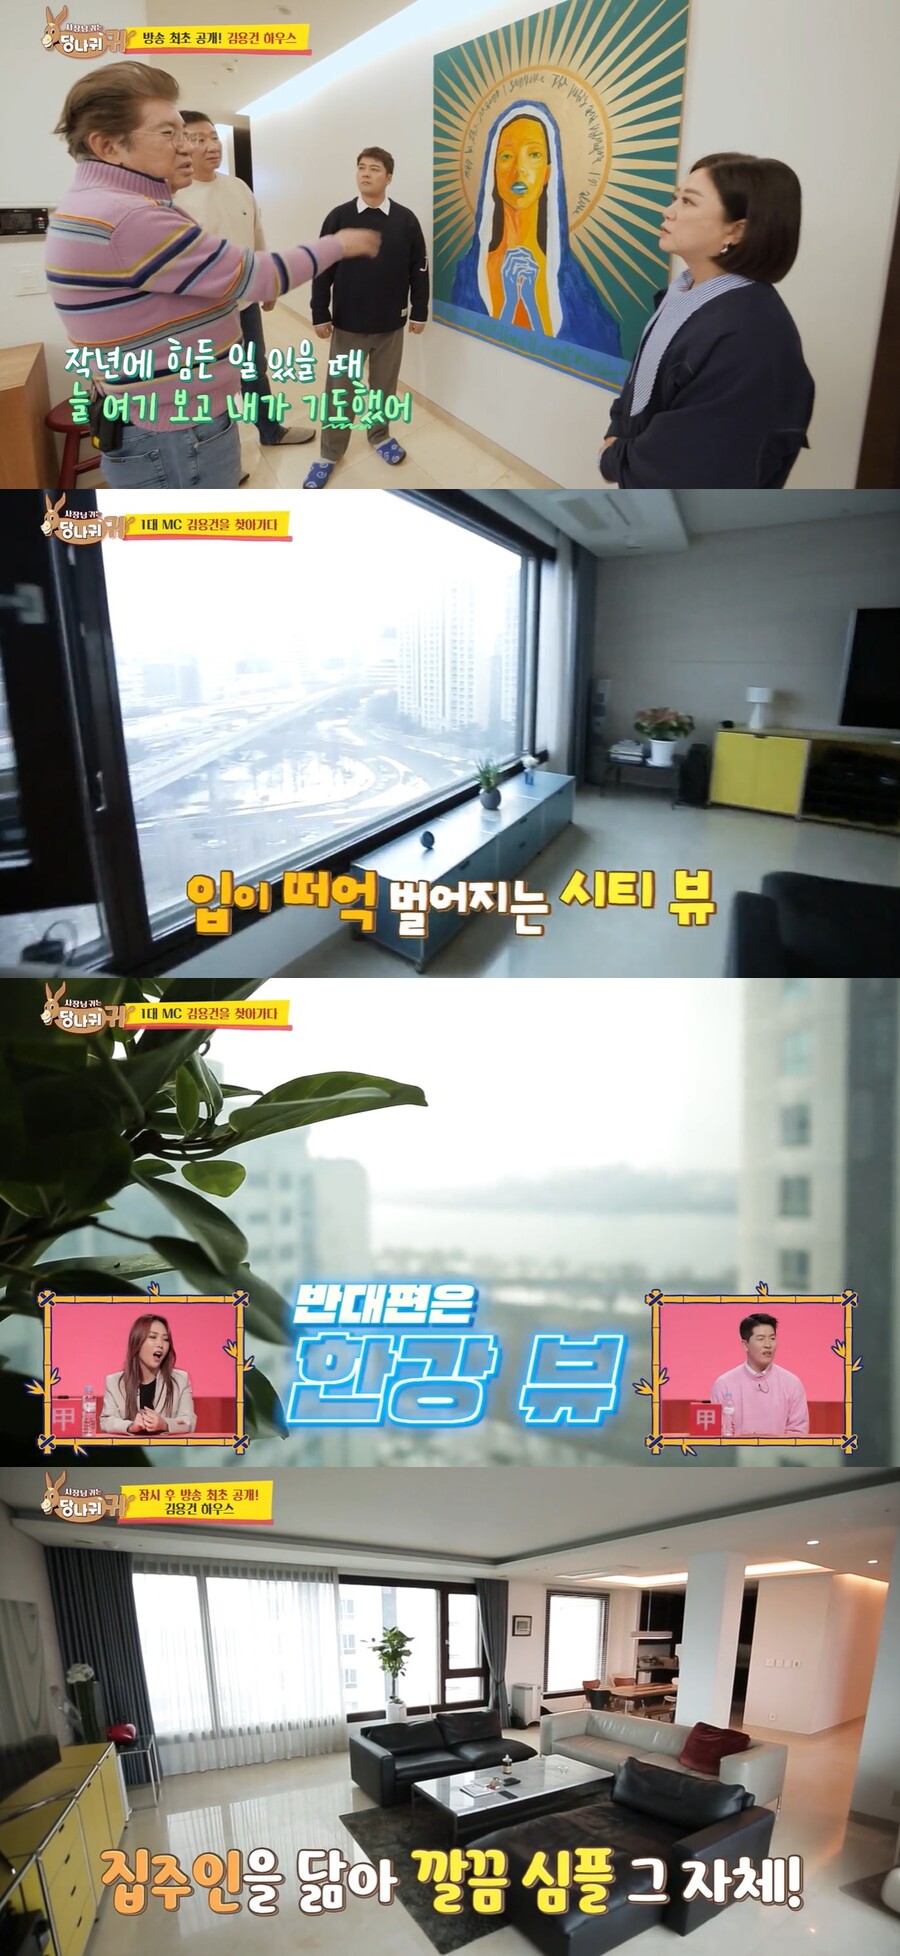 ▲ 김용건. 출처| KBS2 '사장님 귀는 당나귀 귀' 방송 캡처